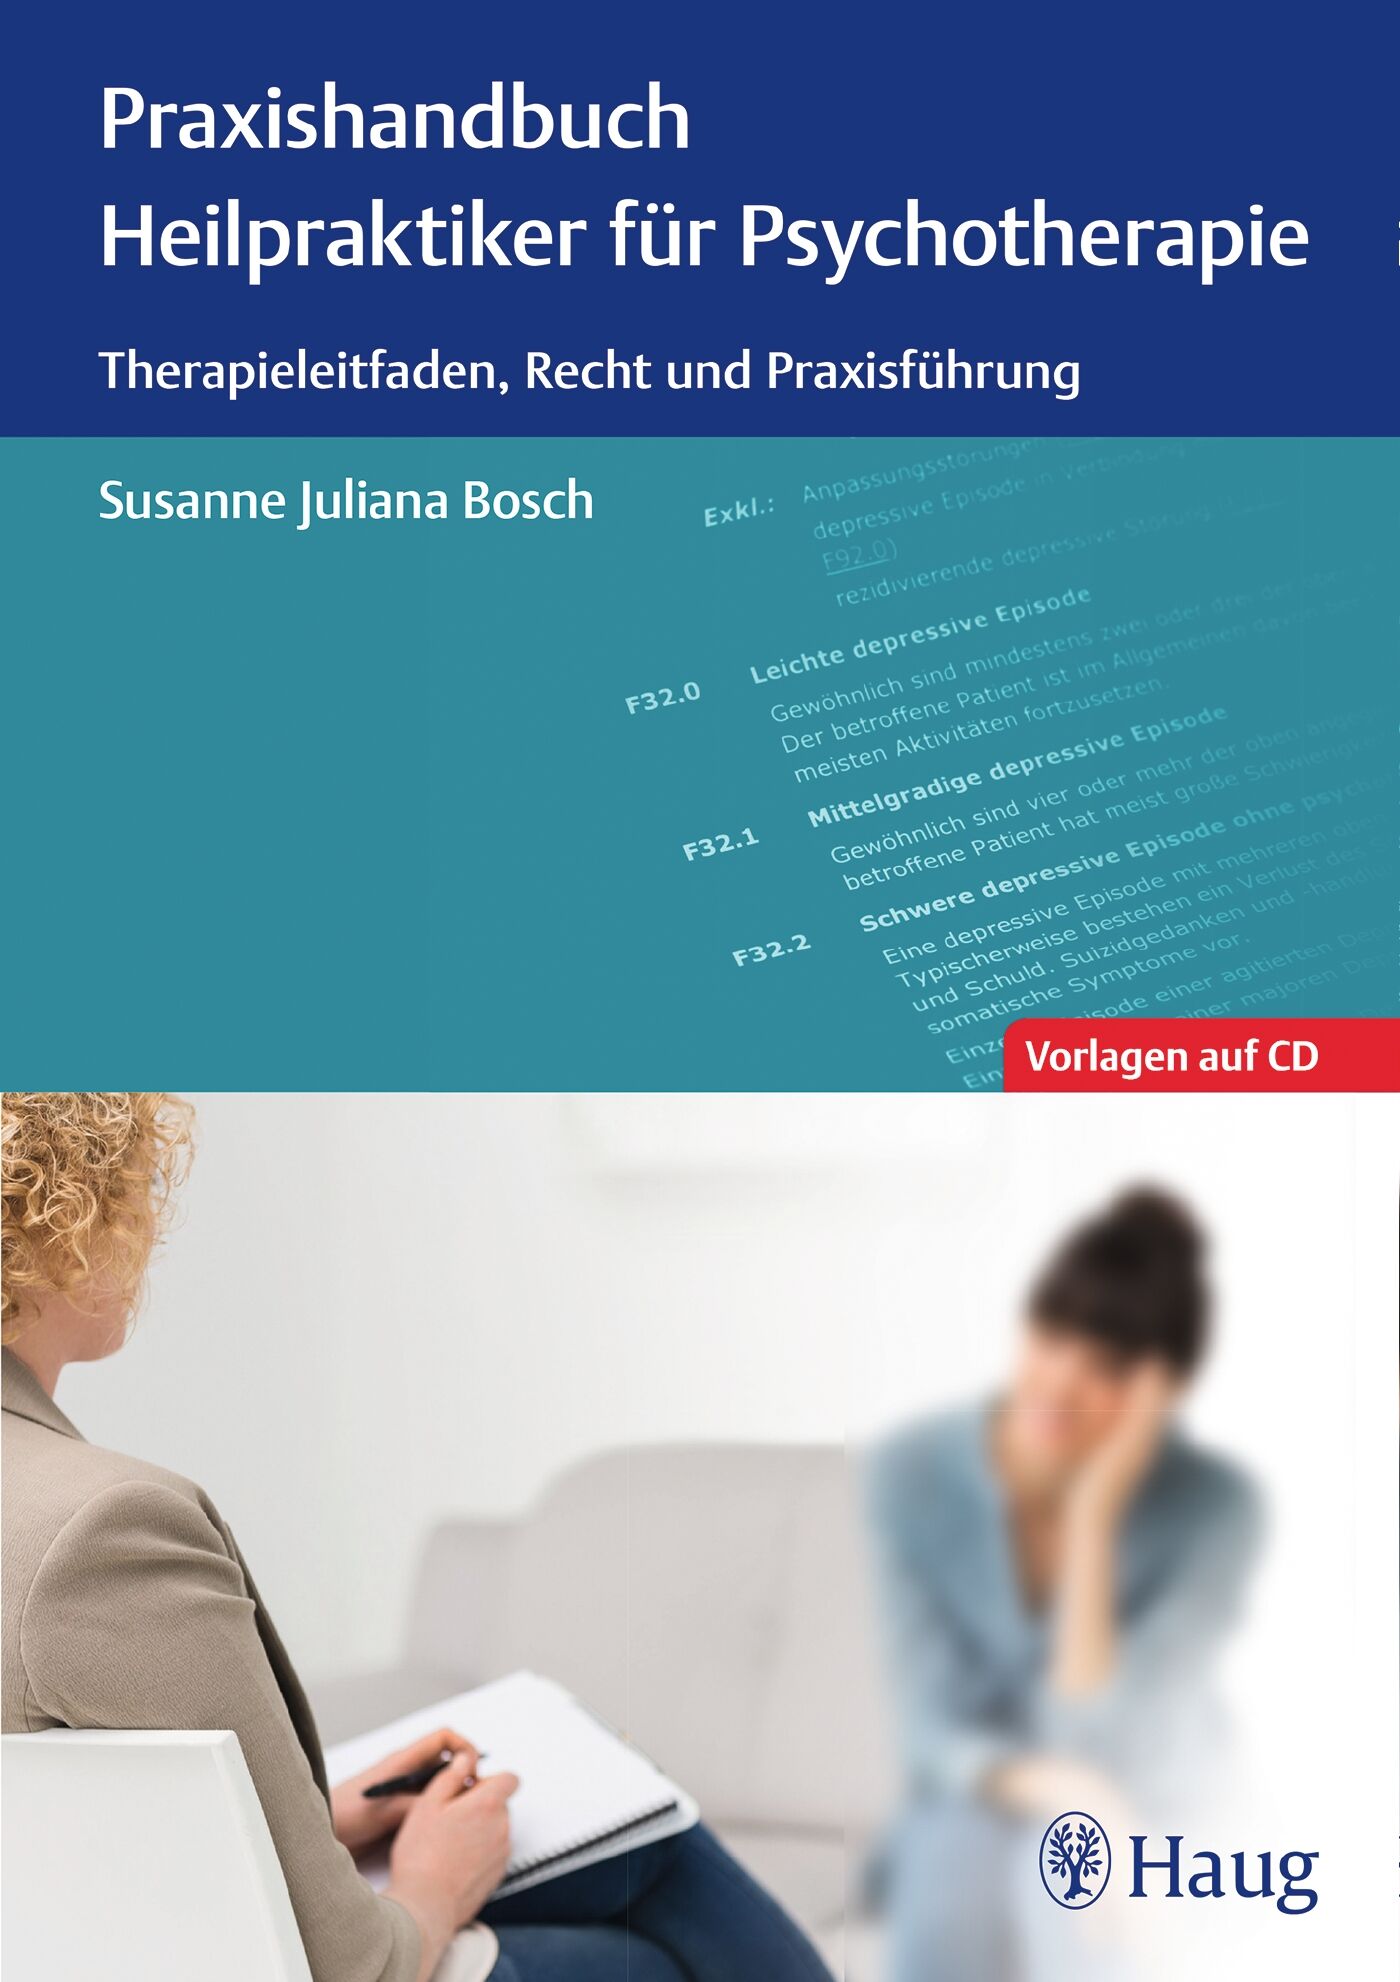 Praxishandbuch Heilpraktiker für Psychotherapie, 9783132053113